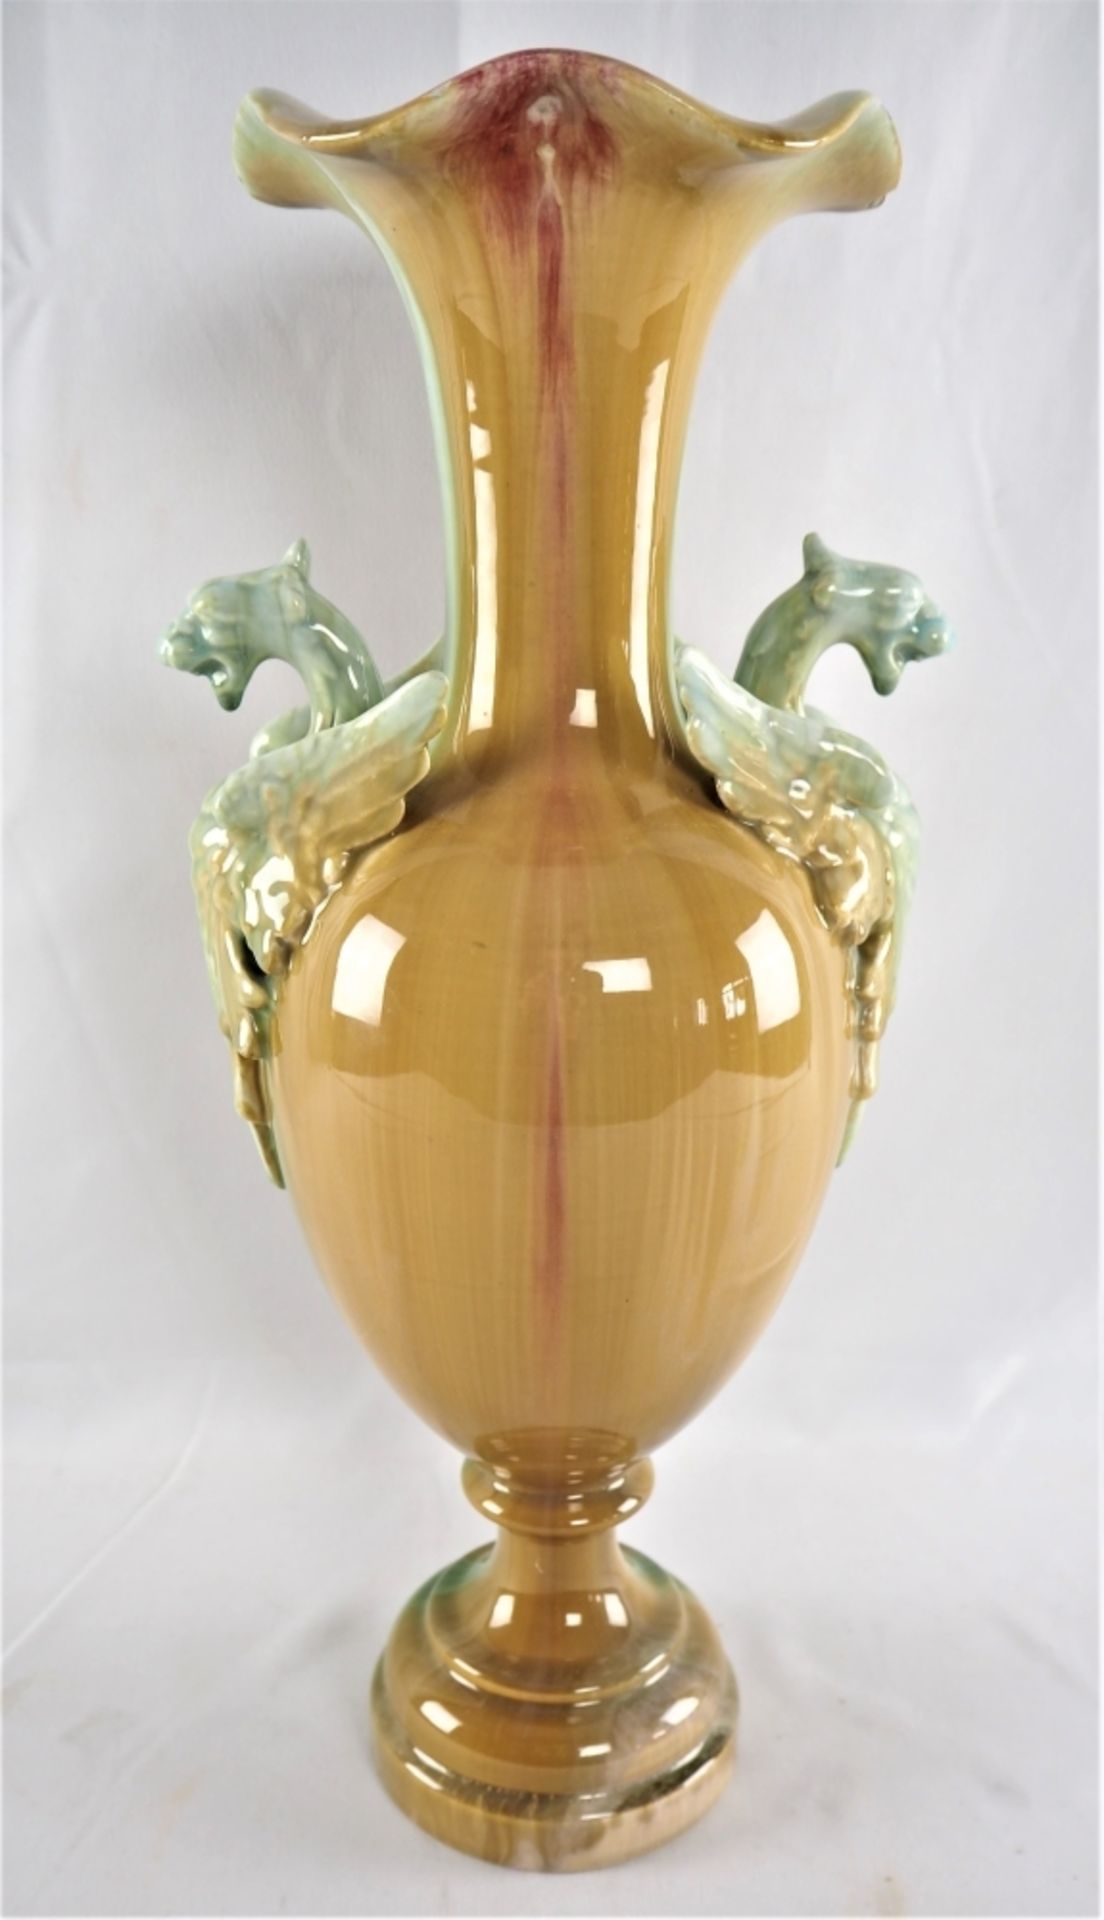 Große Vase 30er JahreKeramik, farbig glasiert, Cuppa-förmig mit gewelltem Hals, Handhabe